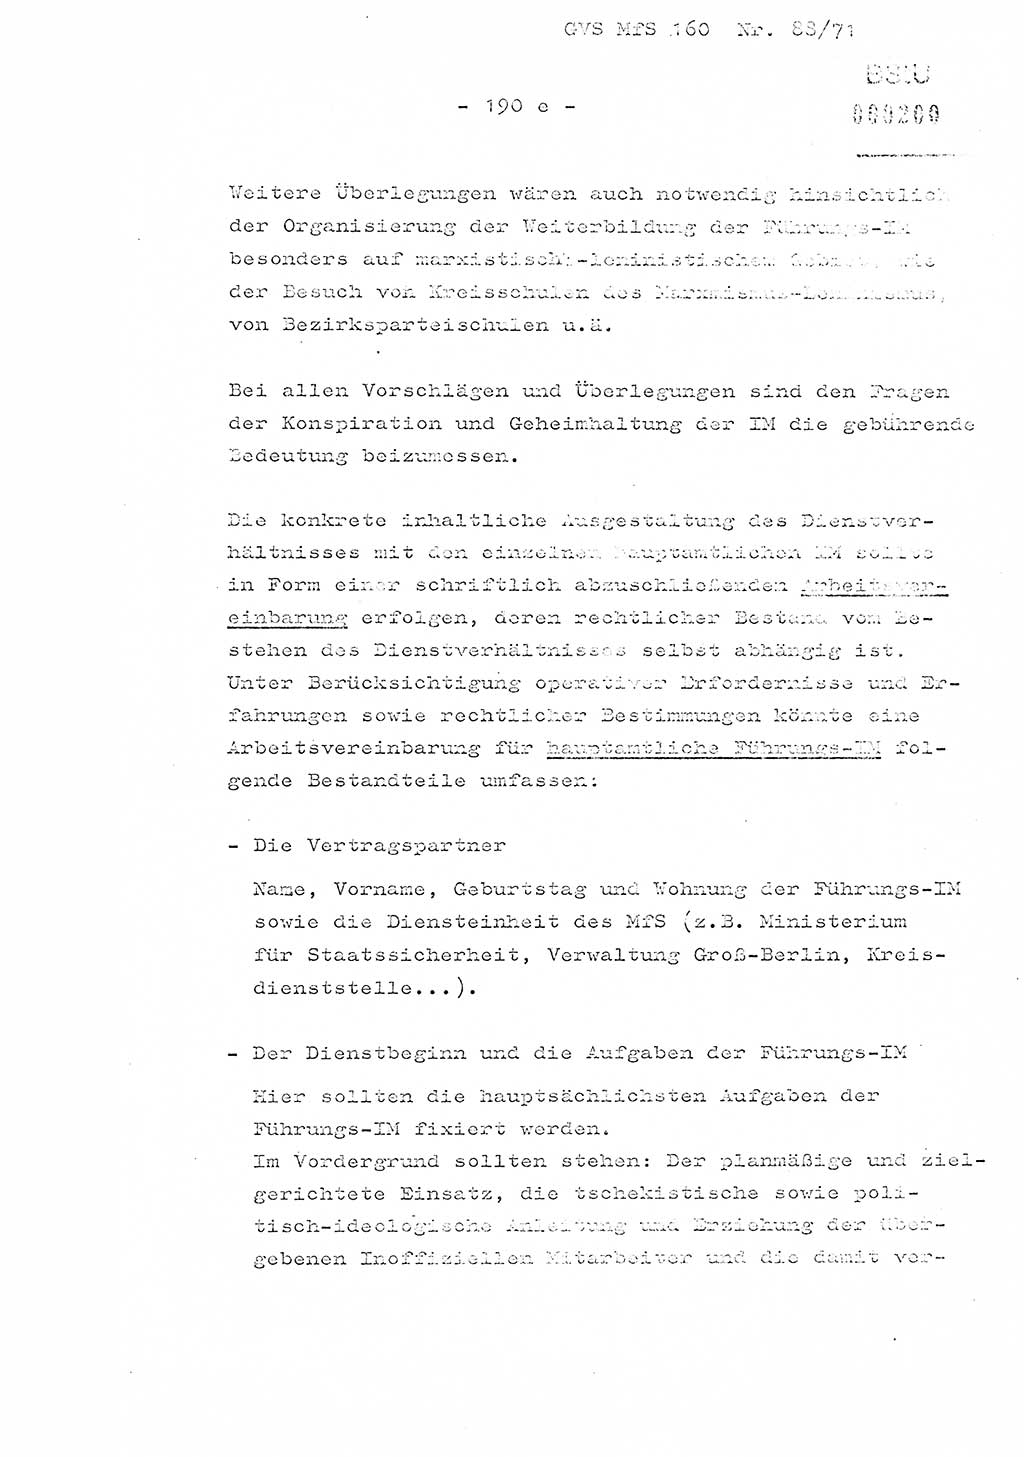 Dissertation Oberstleutnant Josef Schwarz (BV Schwerin), Major Fritz Amm (JHS), Hauptmann Peter Gräßler (JHS), Ministerium für Staatssicherheit (MfS) [Deutsche Demokratische Republik (DDR)], Juristische Hochschule (JHS), Geheime Verschlußsache (GVS) 160-88/71, Potsdam 1972, Seite 190/5 (Diss. MfS DDR JHS GVS 160-88/71 1972, S. 190/5)